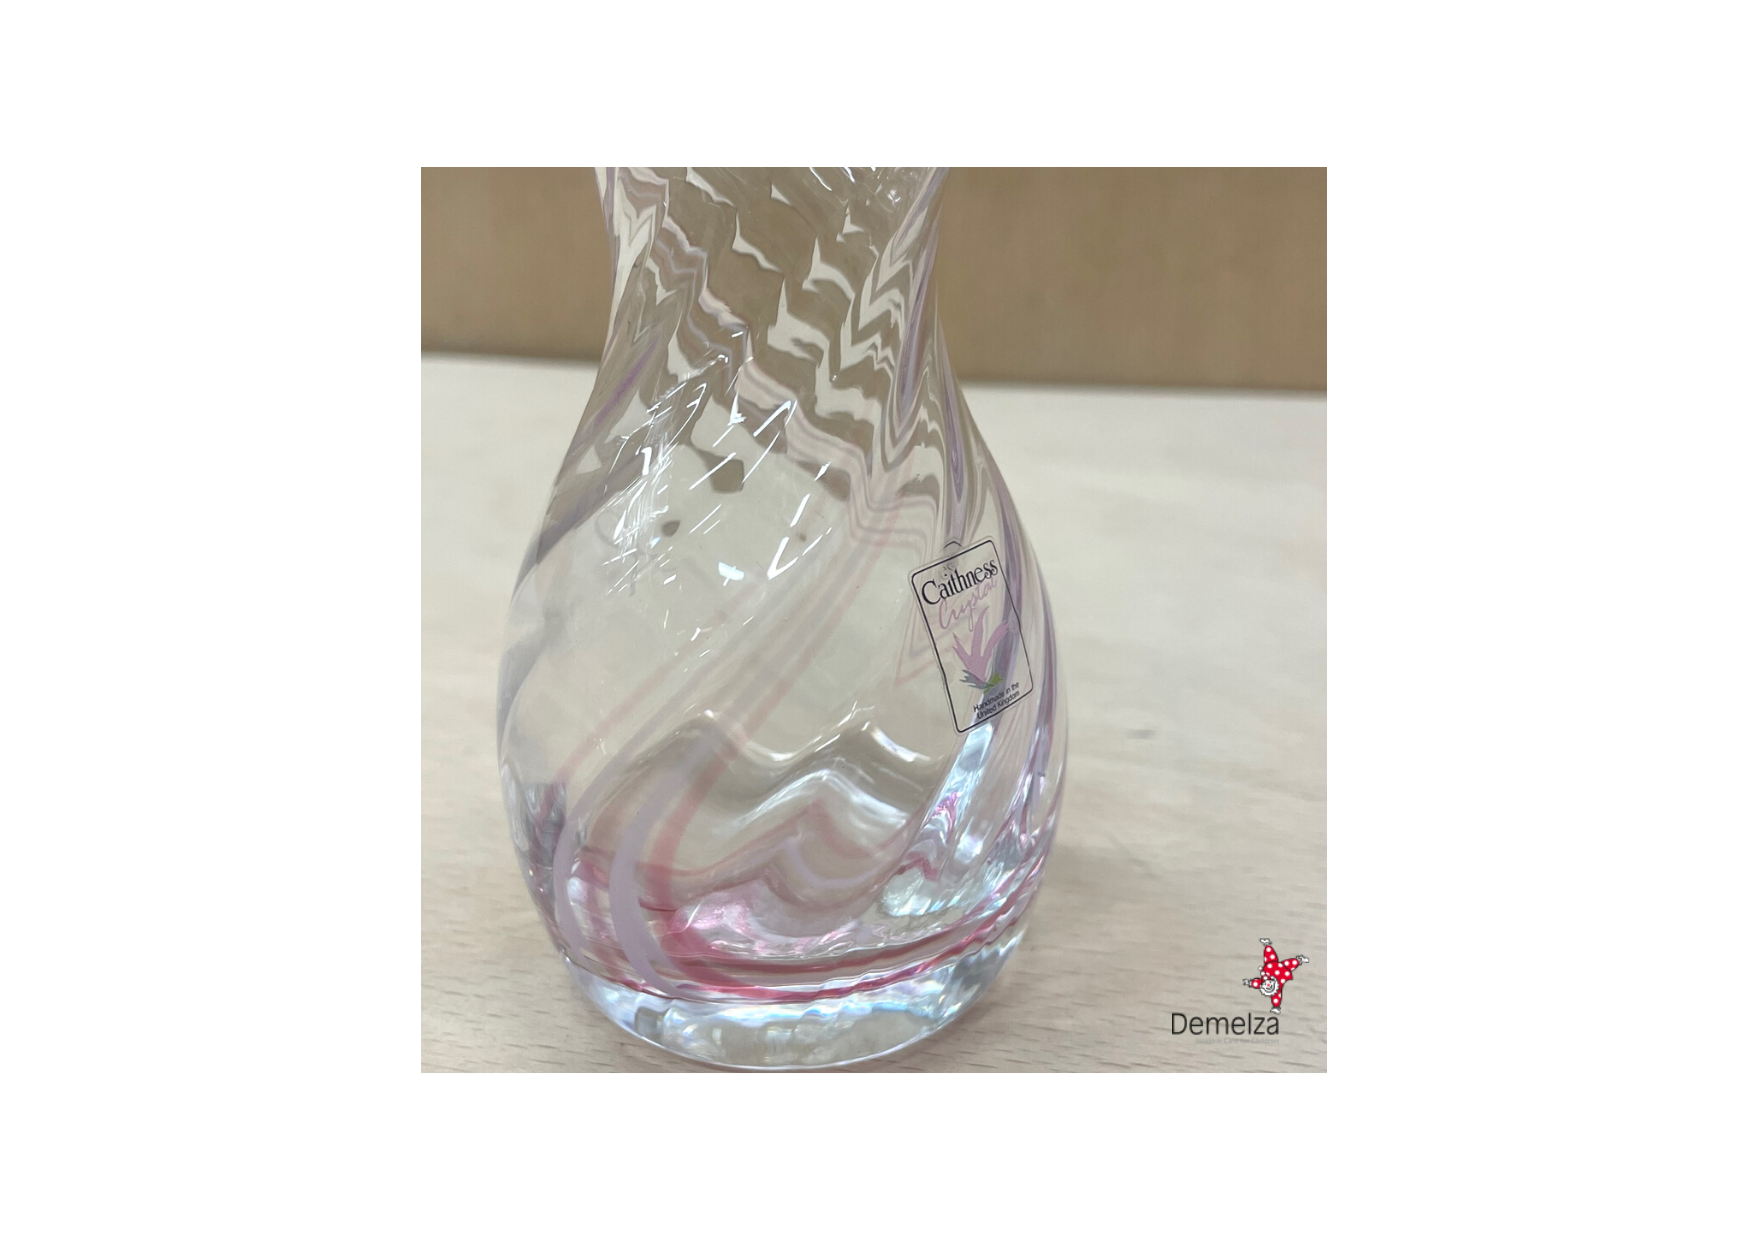 Makers Mark Label for Vintage Caithness Glass Pink Bud Vase